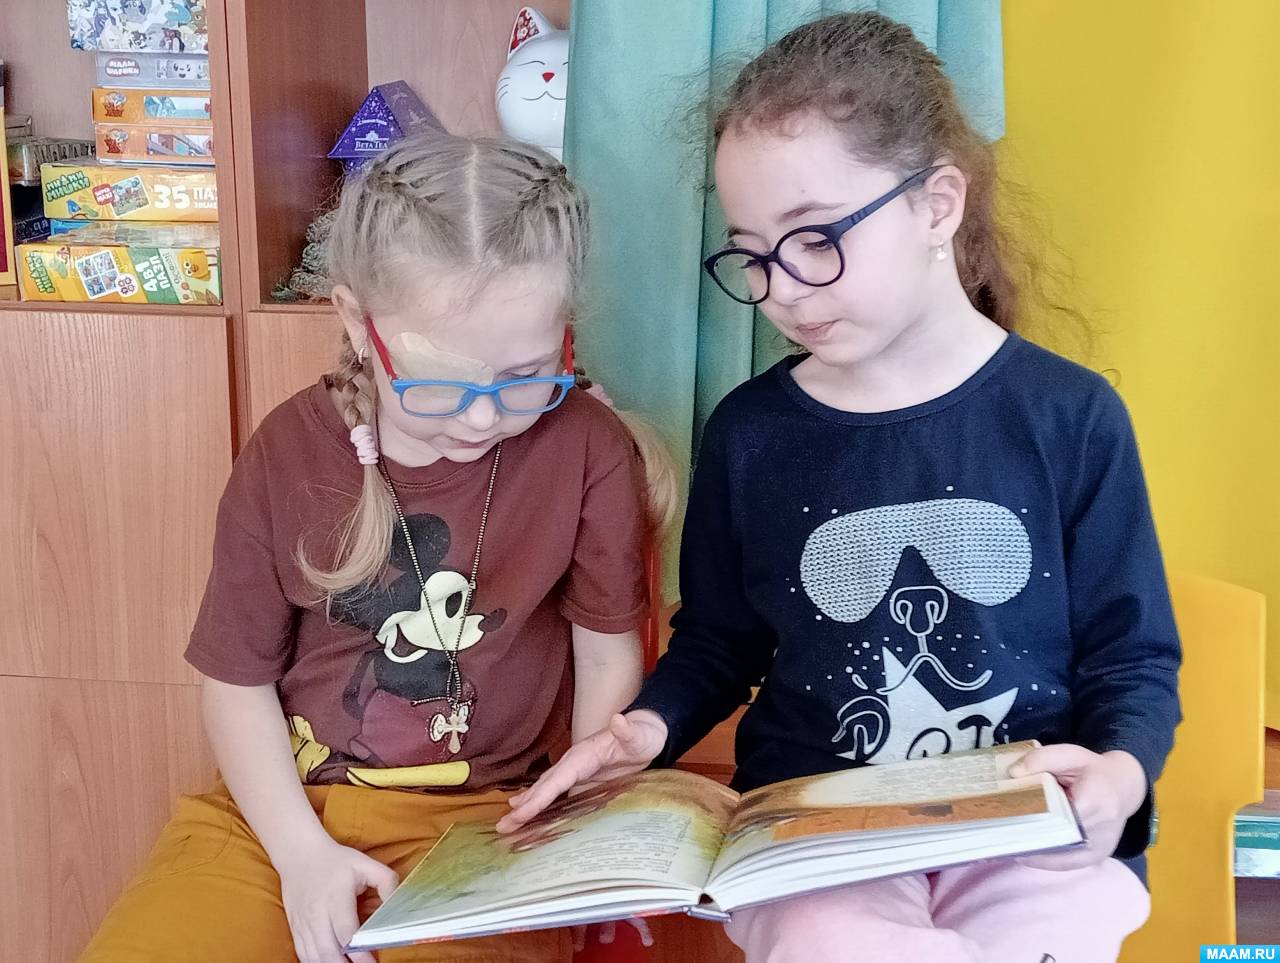 Тактильные книги для развития воображения и осязания у детей с нарушением зрения